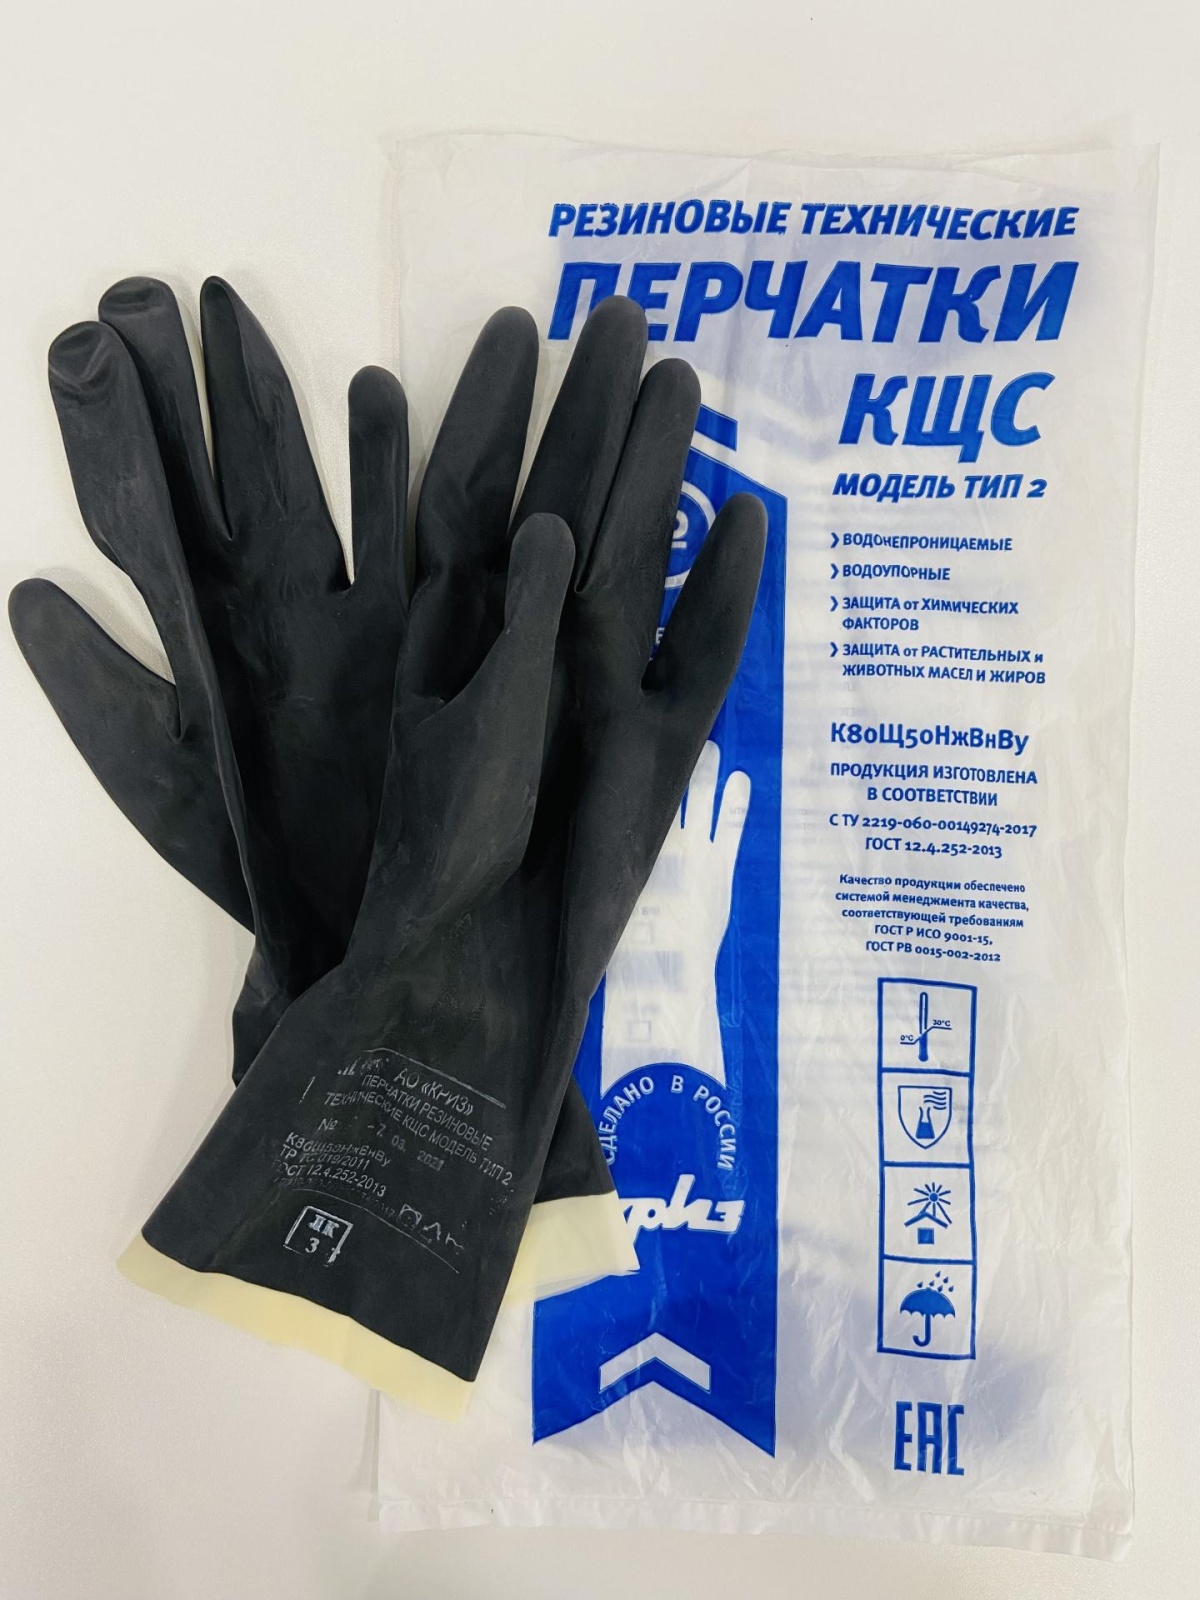 Перчатки резиновые технические КЩС К80Щ50 тип 2